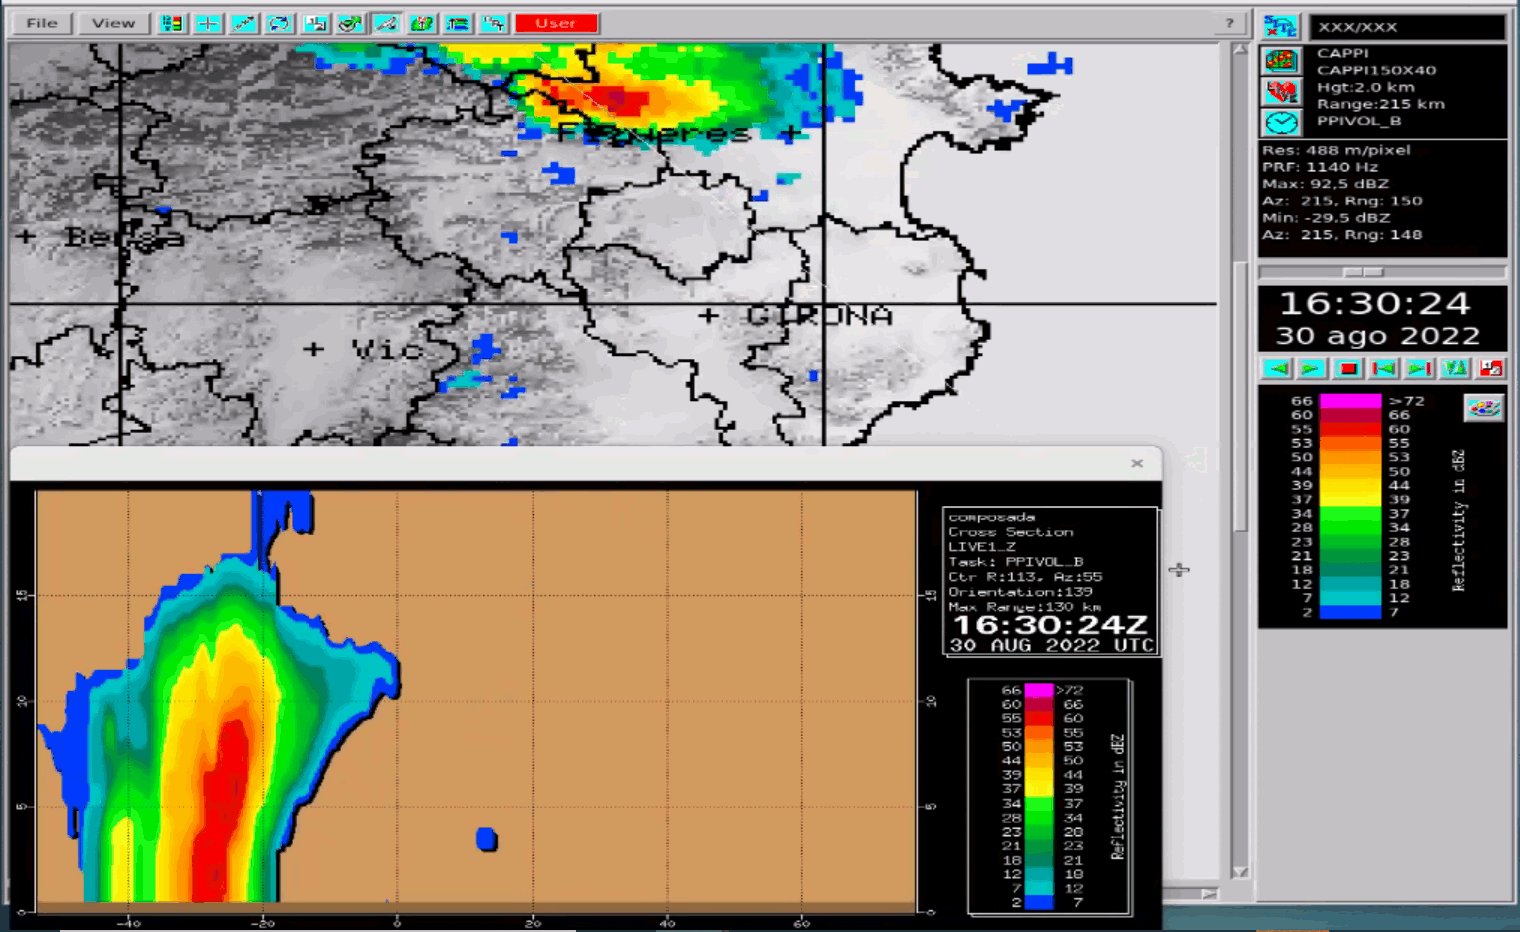 Imatges de reflectivitat del radar i perfil vertical de la tempesta a les 17:30 TU